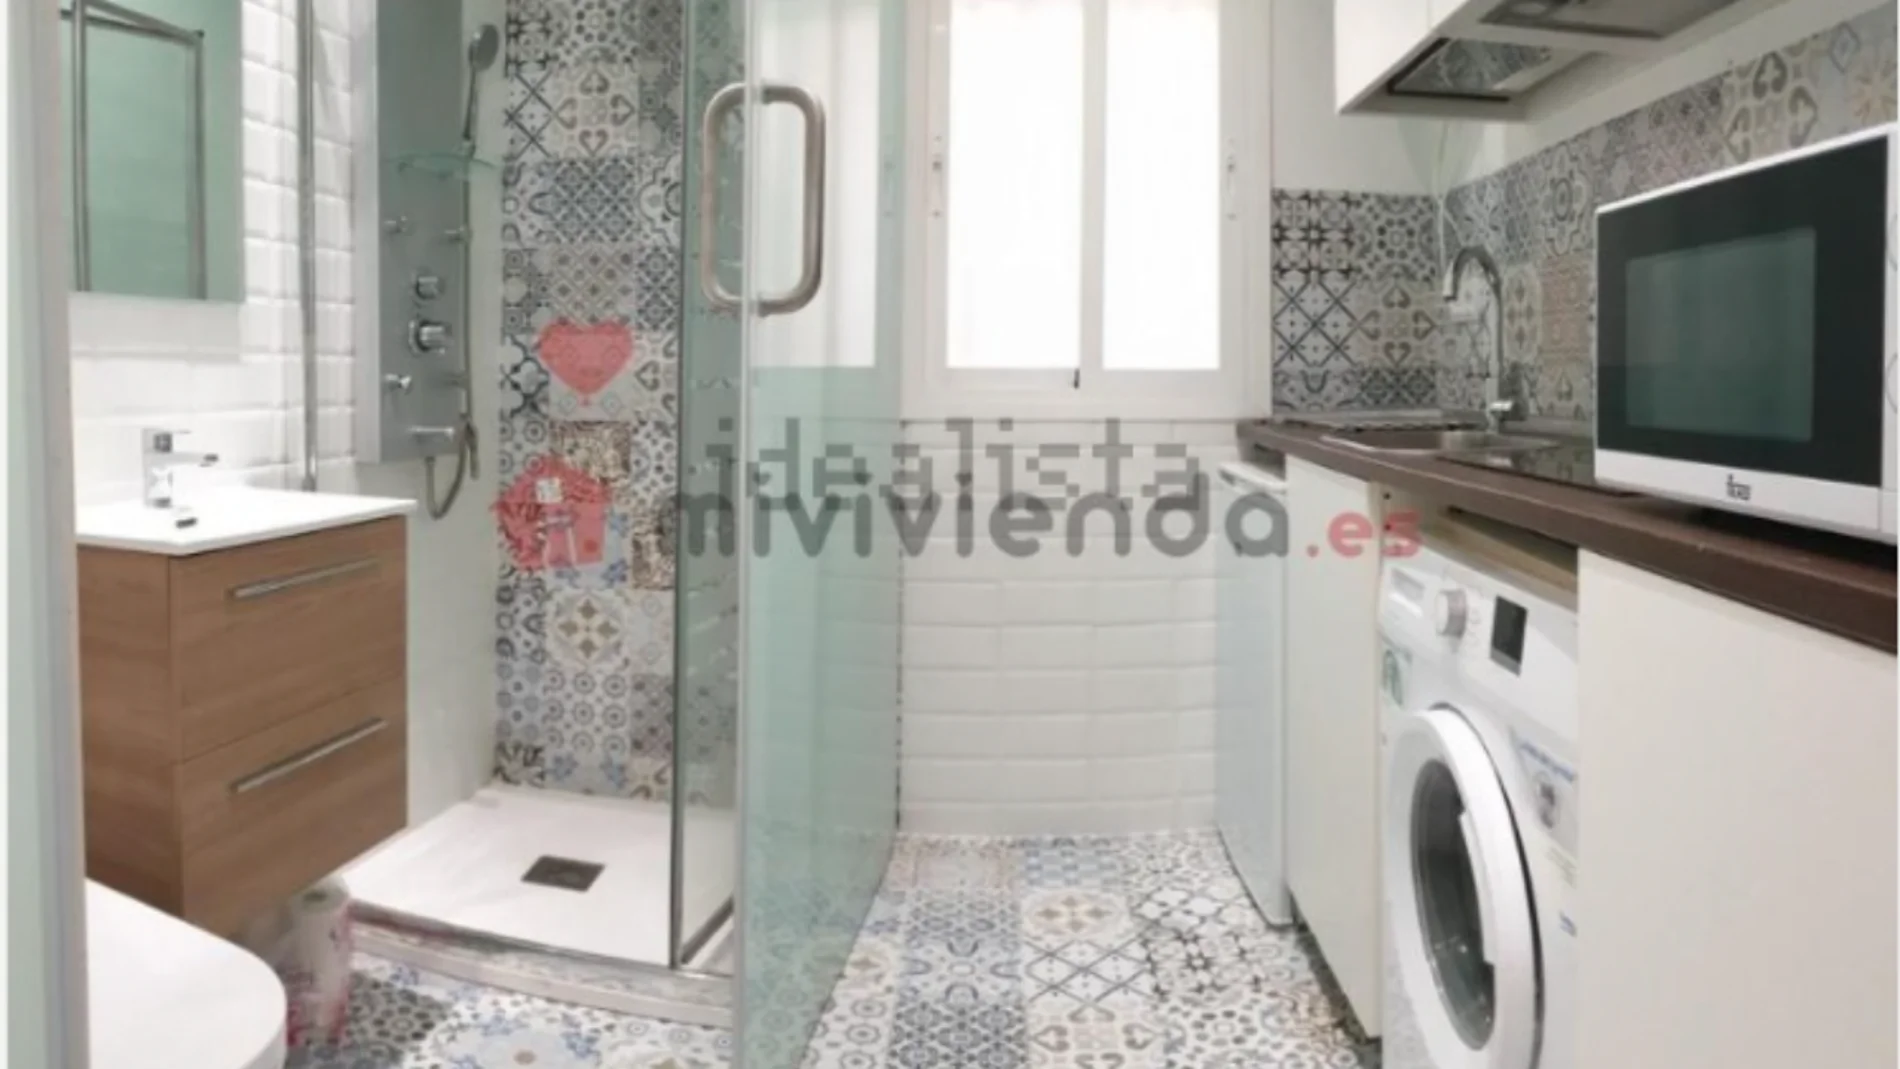 Idealista anuncia un piso con el baño dentro de la cocina por 550 euros al mes